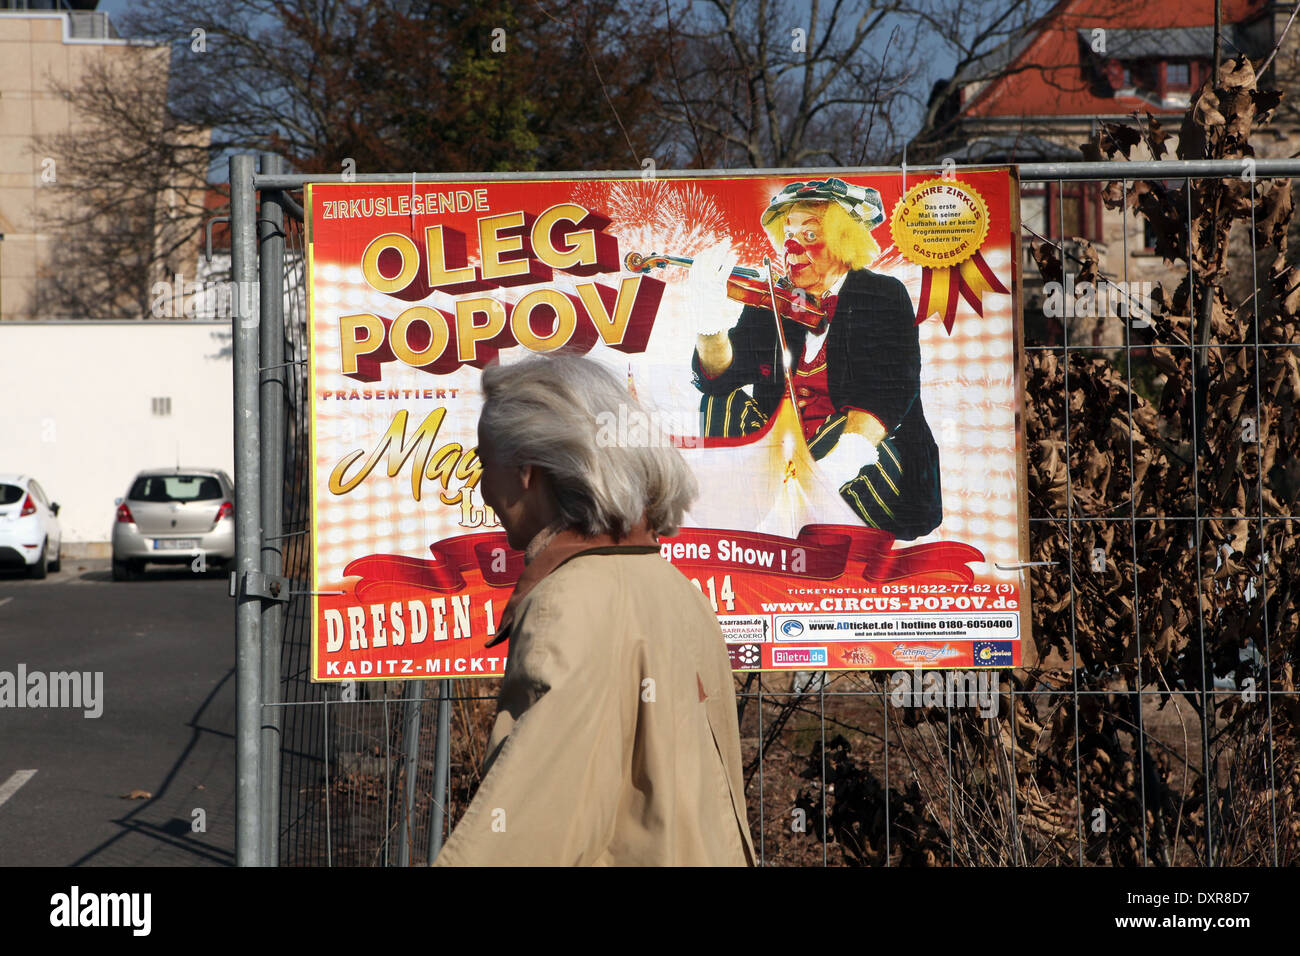 Ein Plakat für die neue show "Magic Life" des berühmten russischen Clown Oleg Popov gesehen in Dresden, Deutschland. Stockfoto